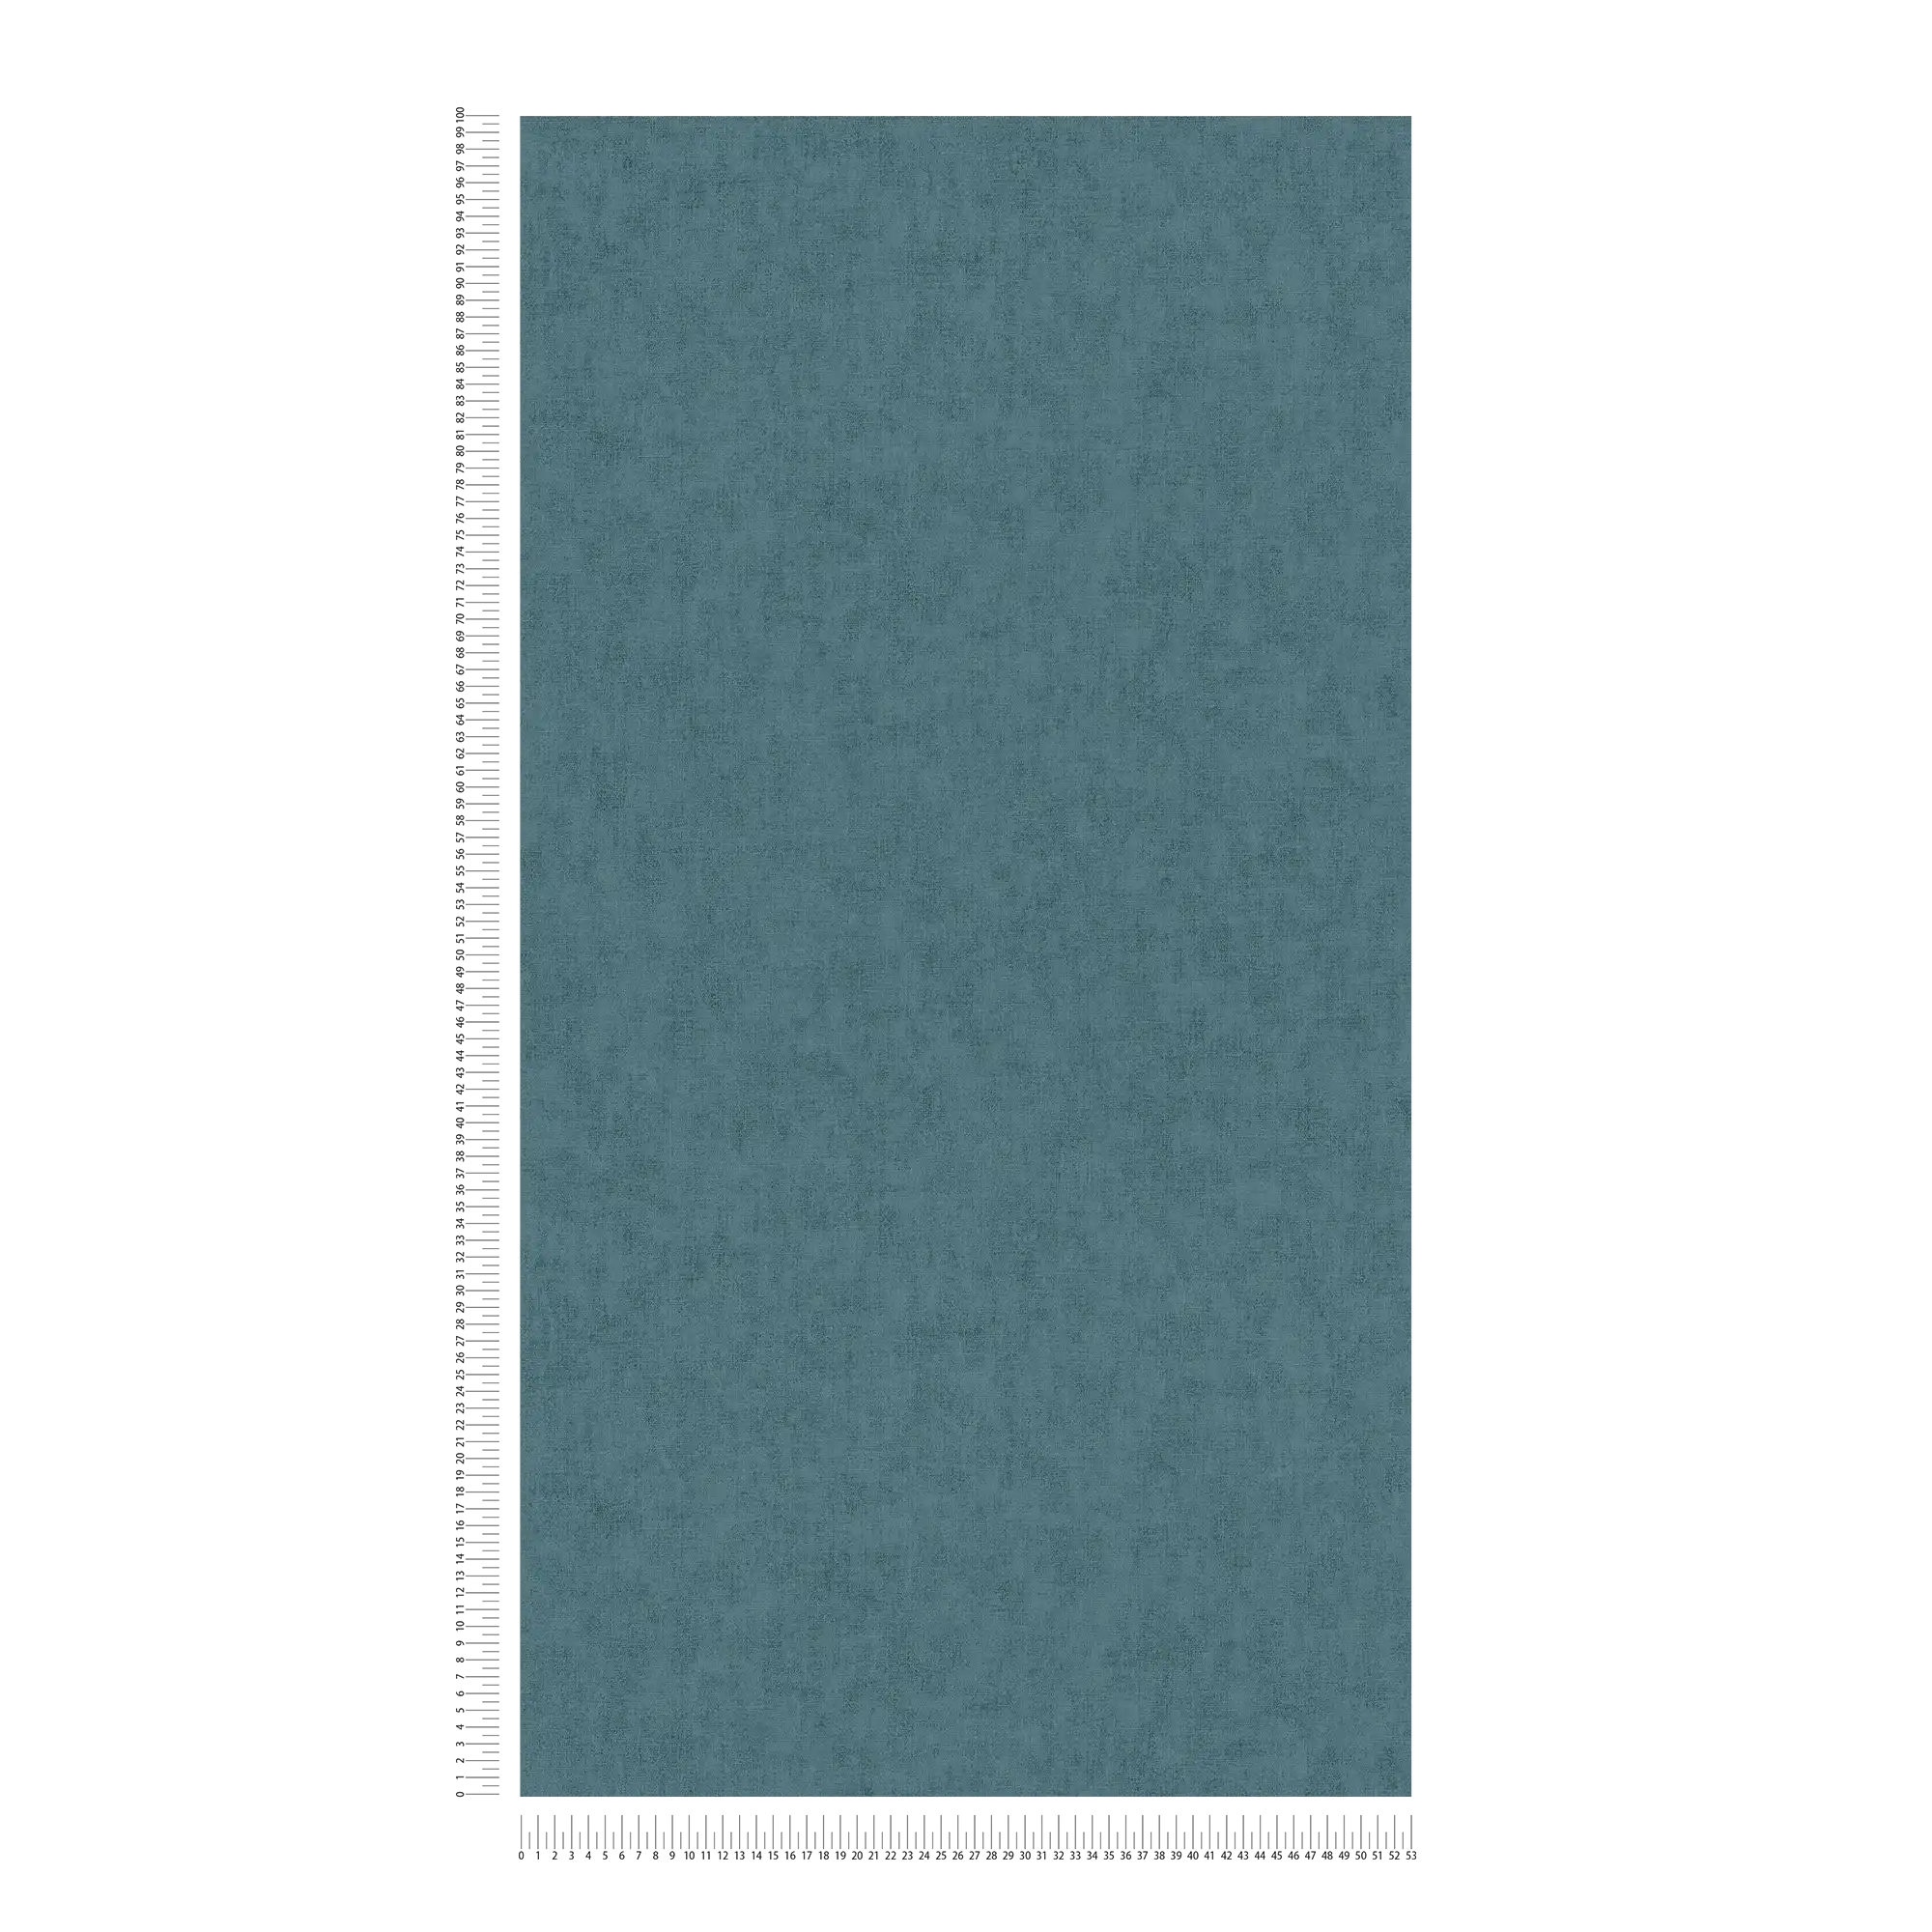             Papier peint intissé aspect textile style scandinave - bleu, gris
        